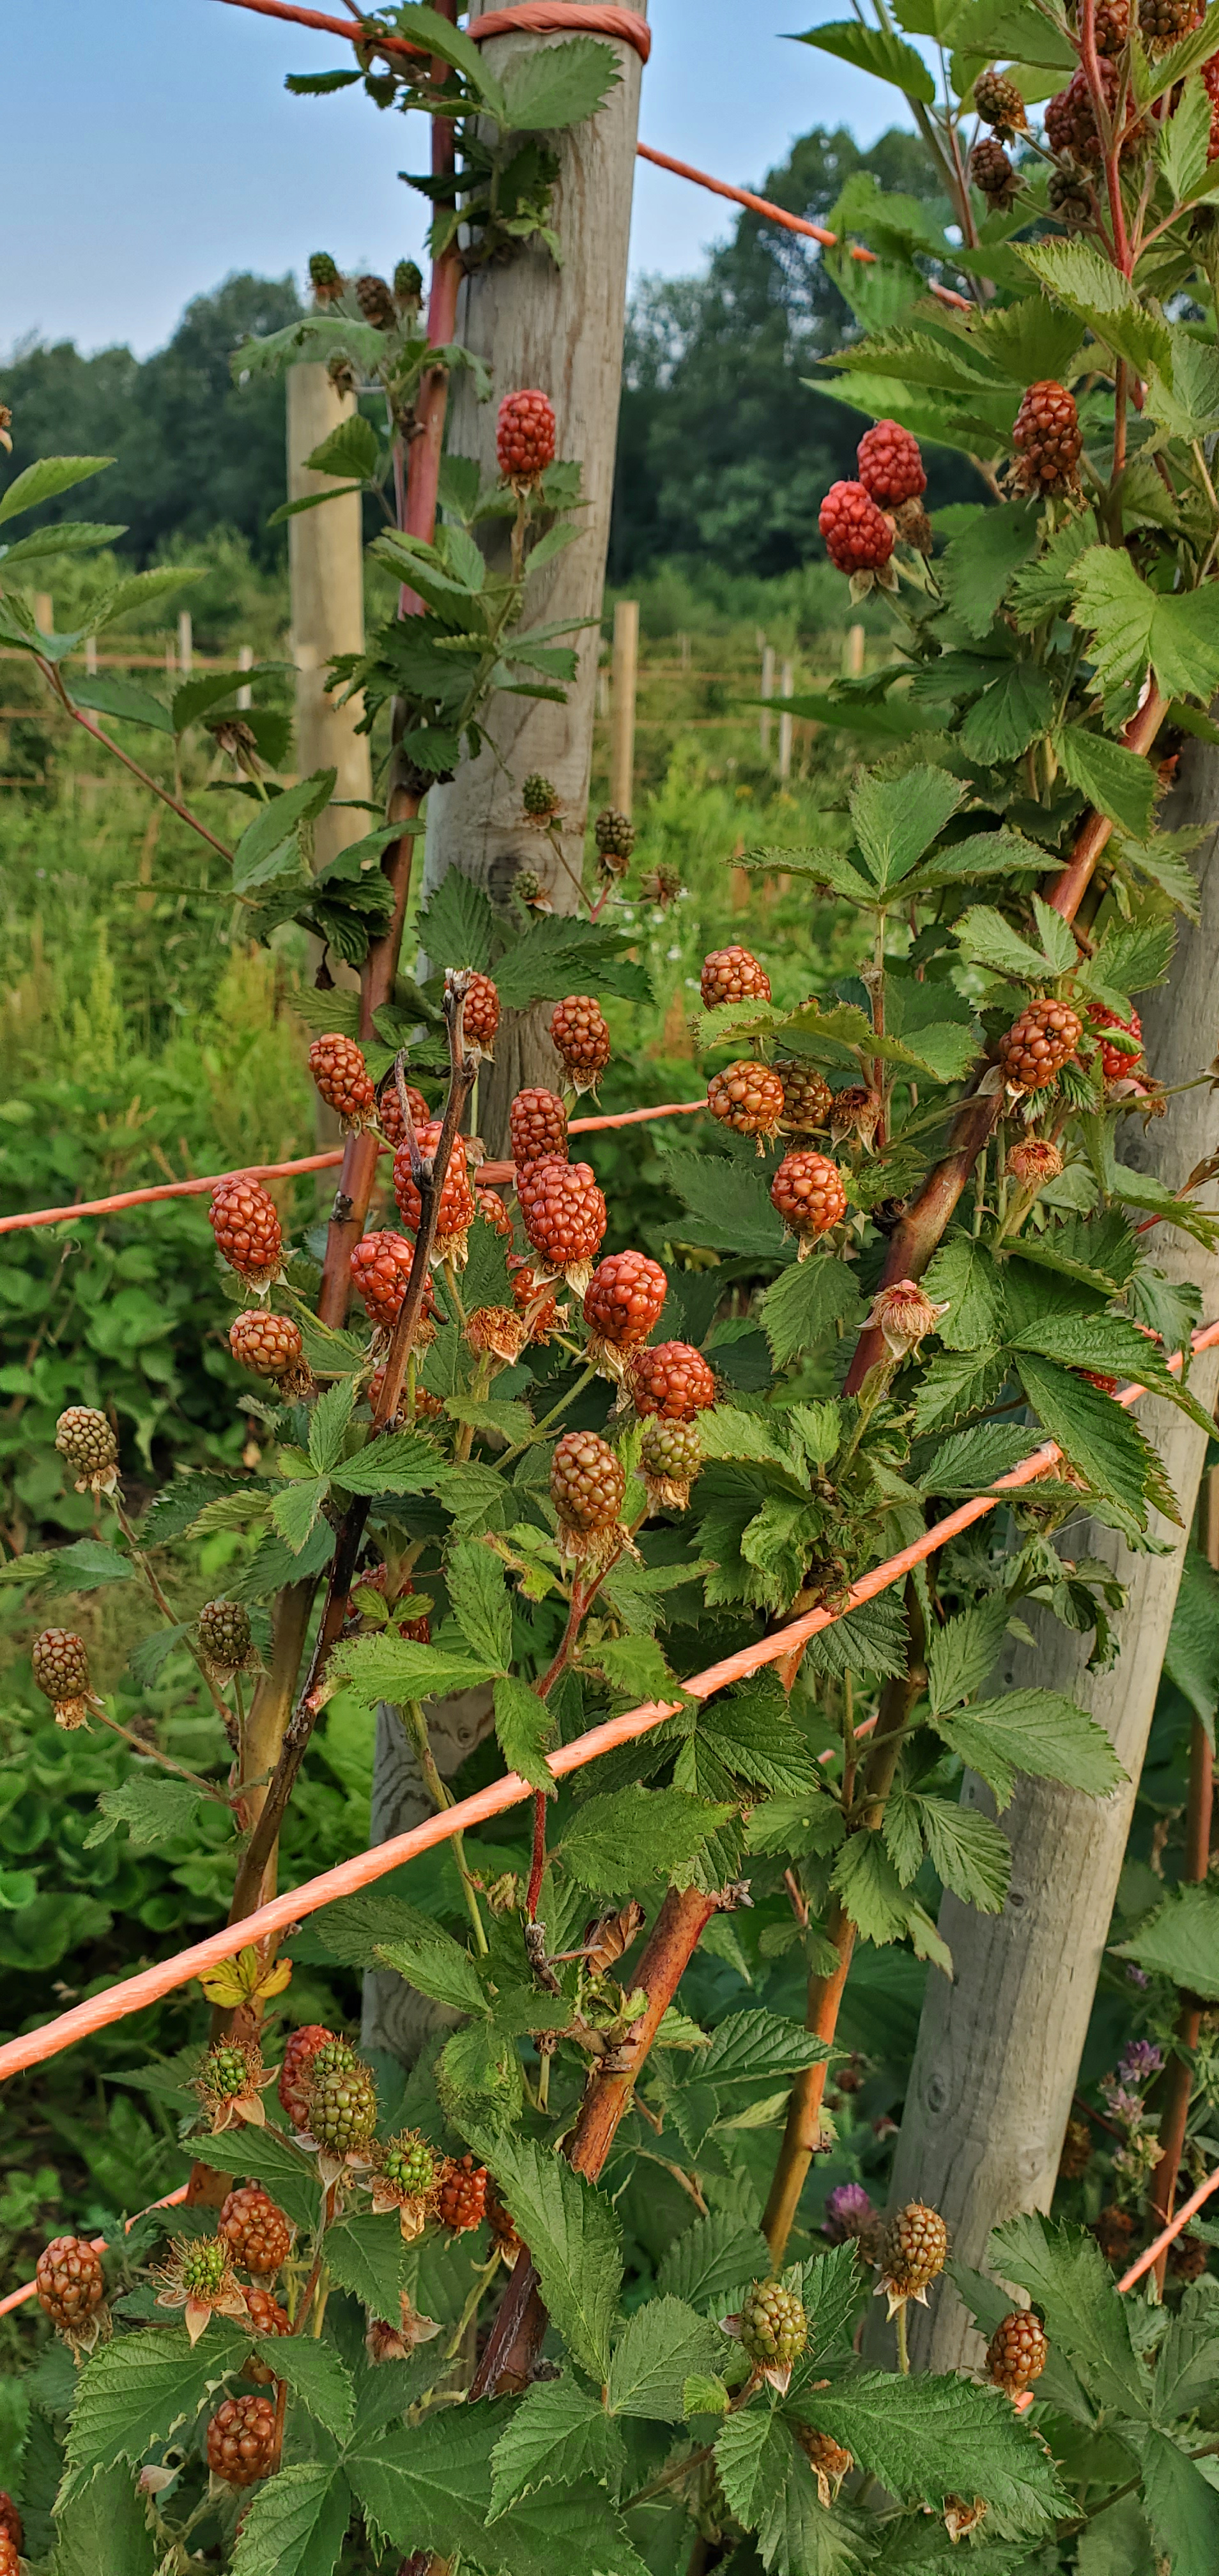 Blackberries ready for harvest.